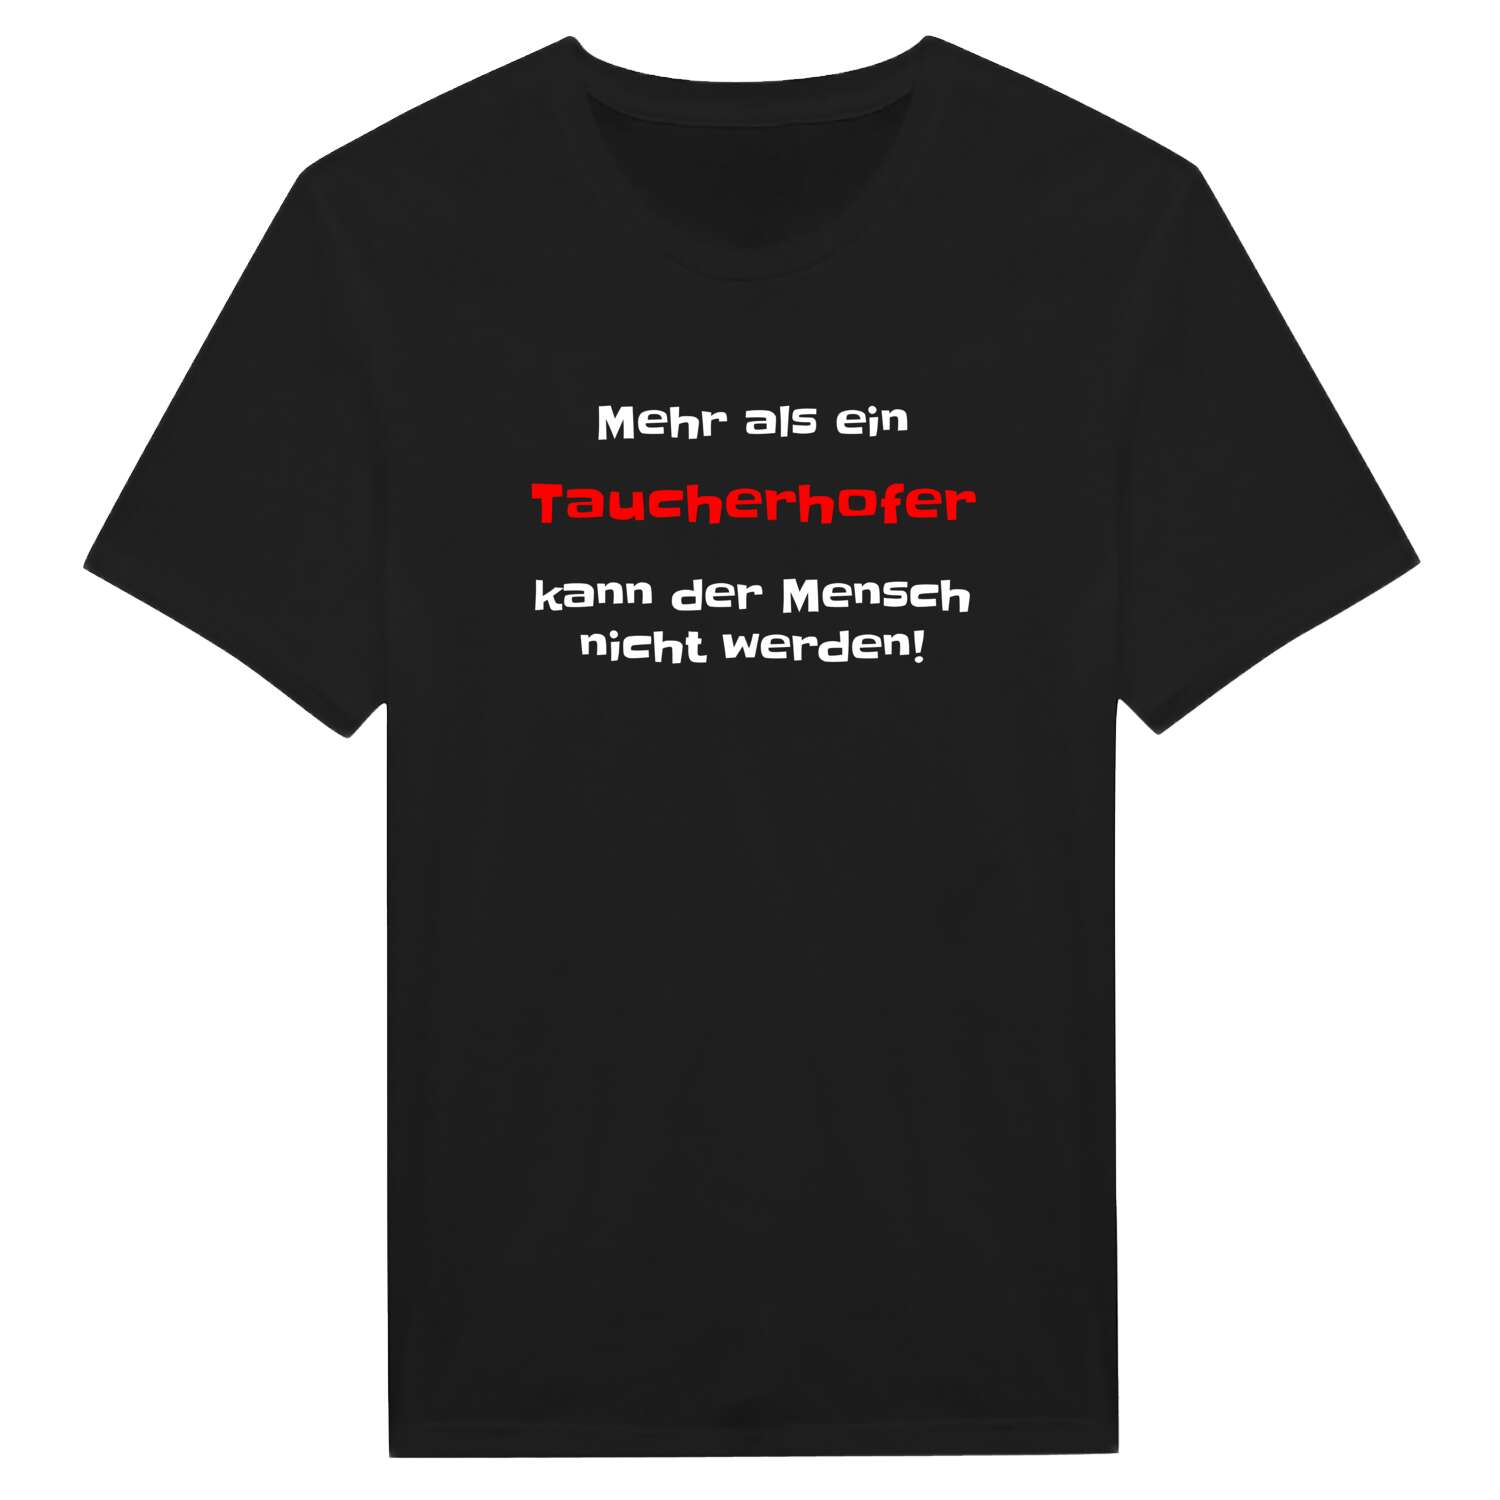 Taucherhof T-Shirt »Mehr als ein«